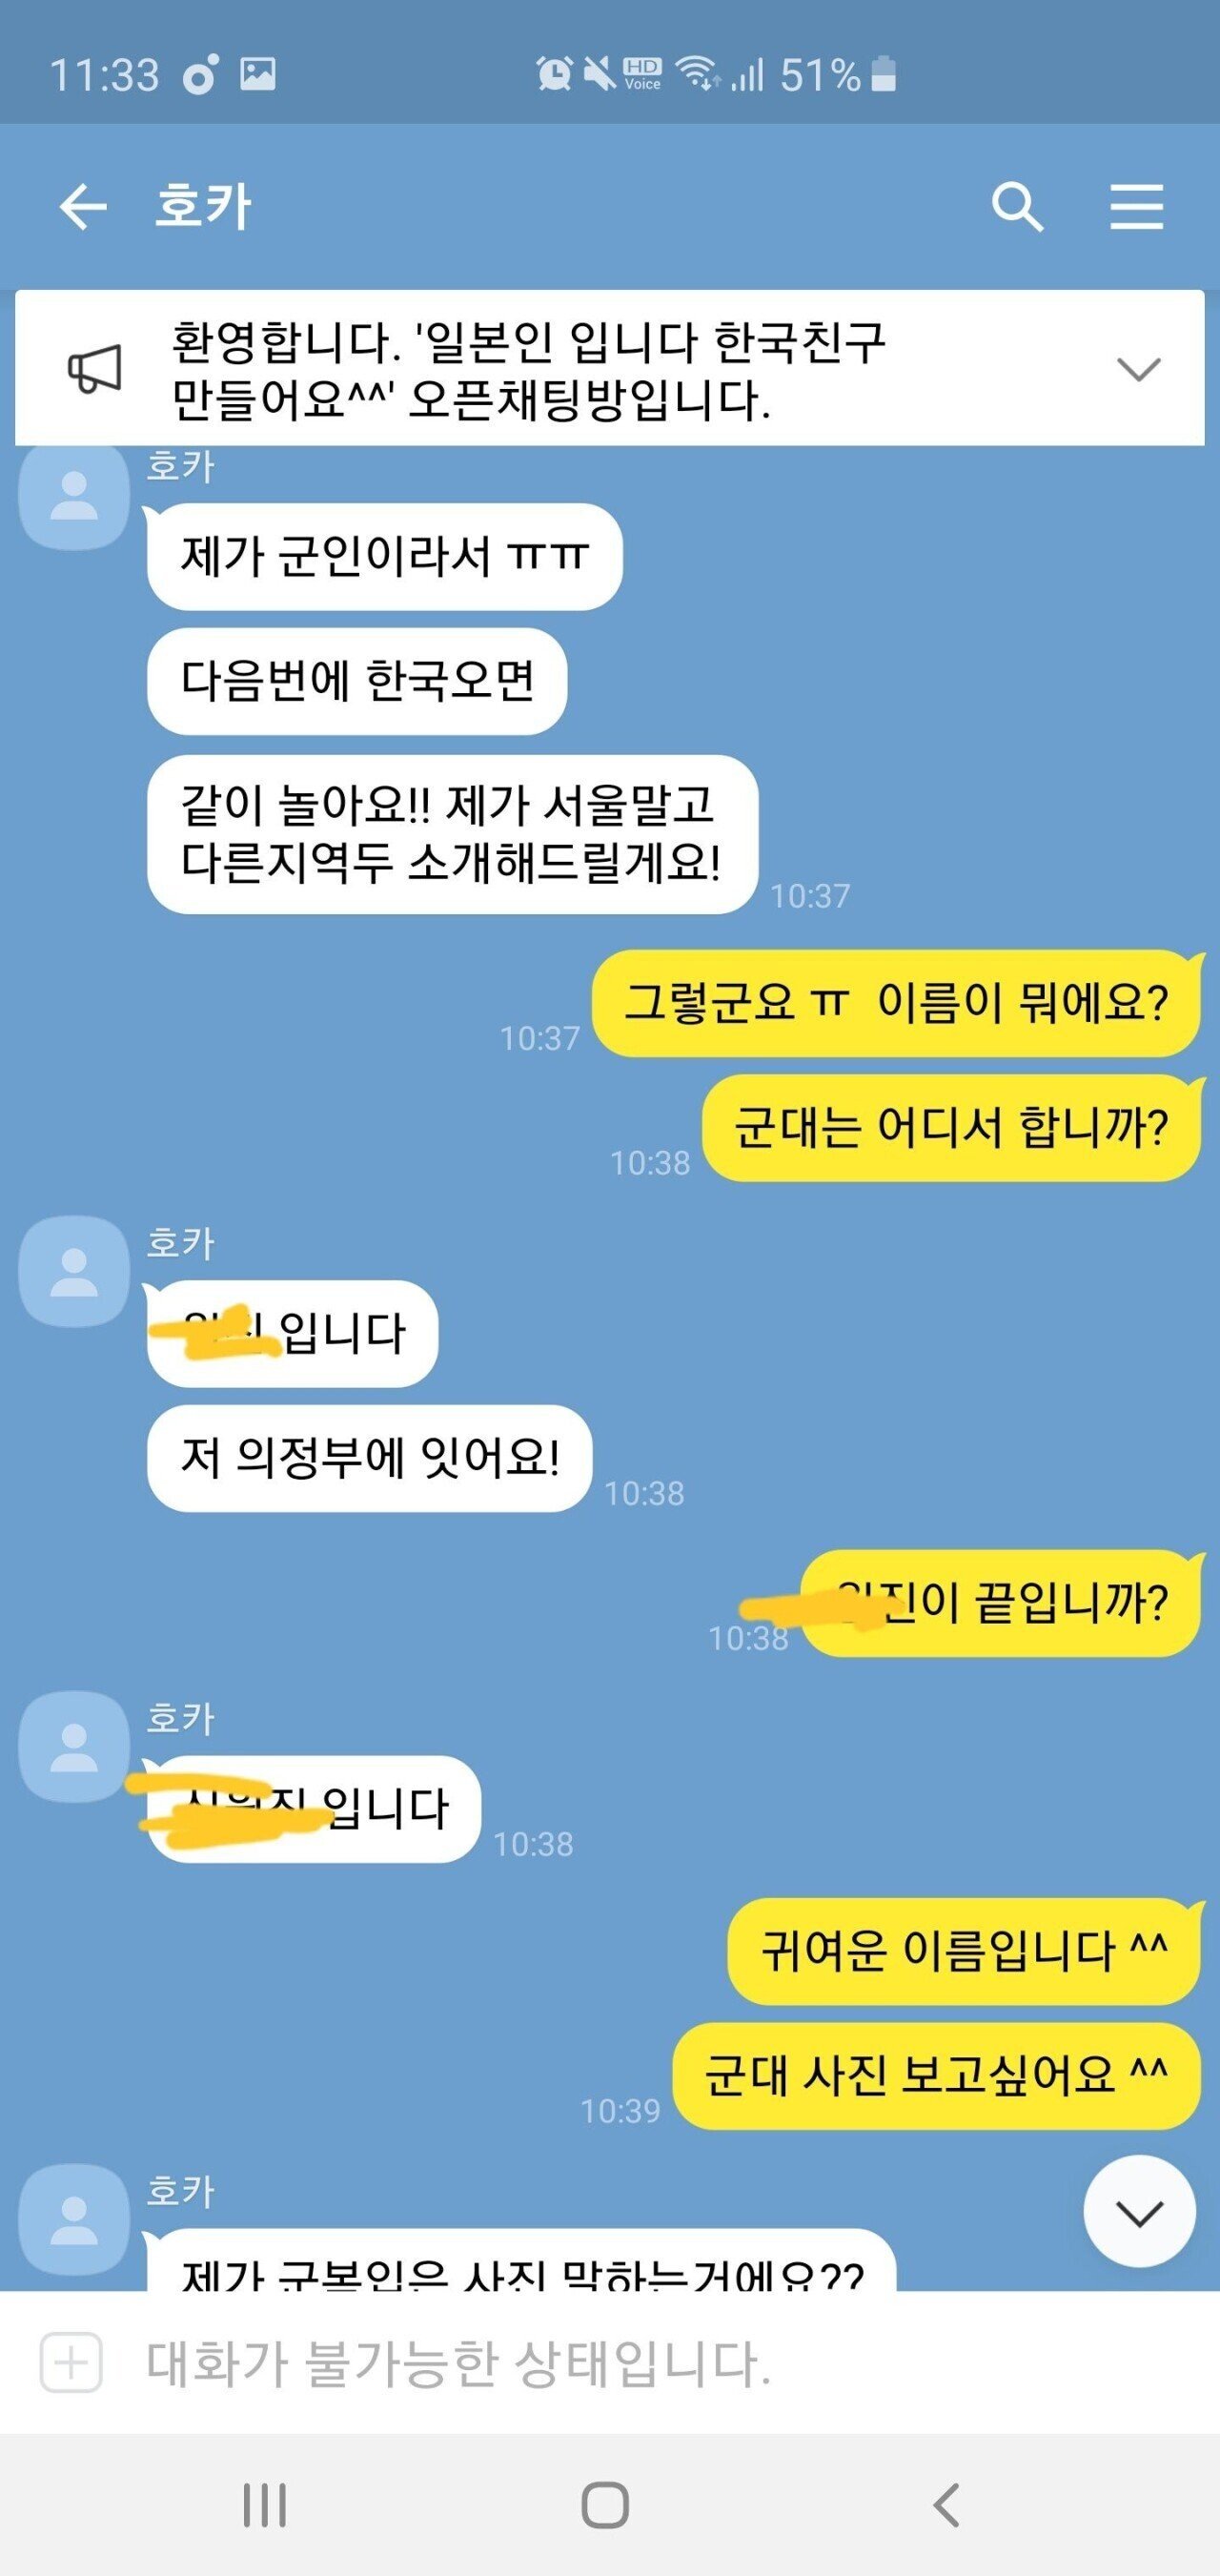 현역 군인 스시녀와 카톡중 눈물..jpg